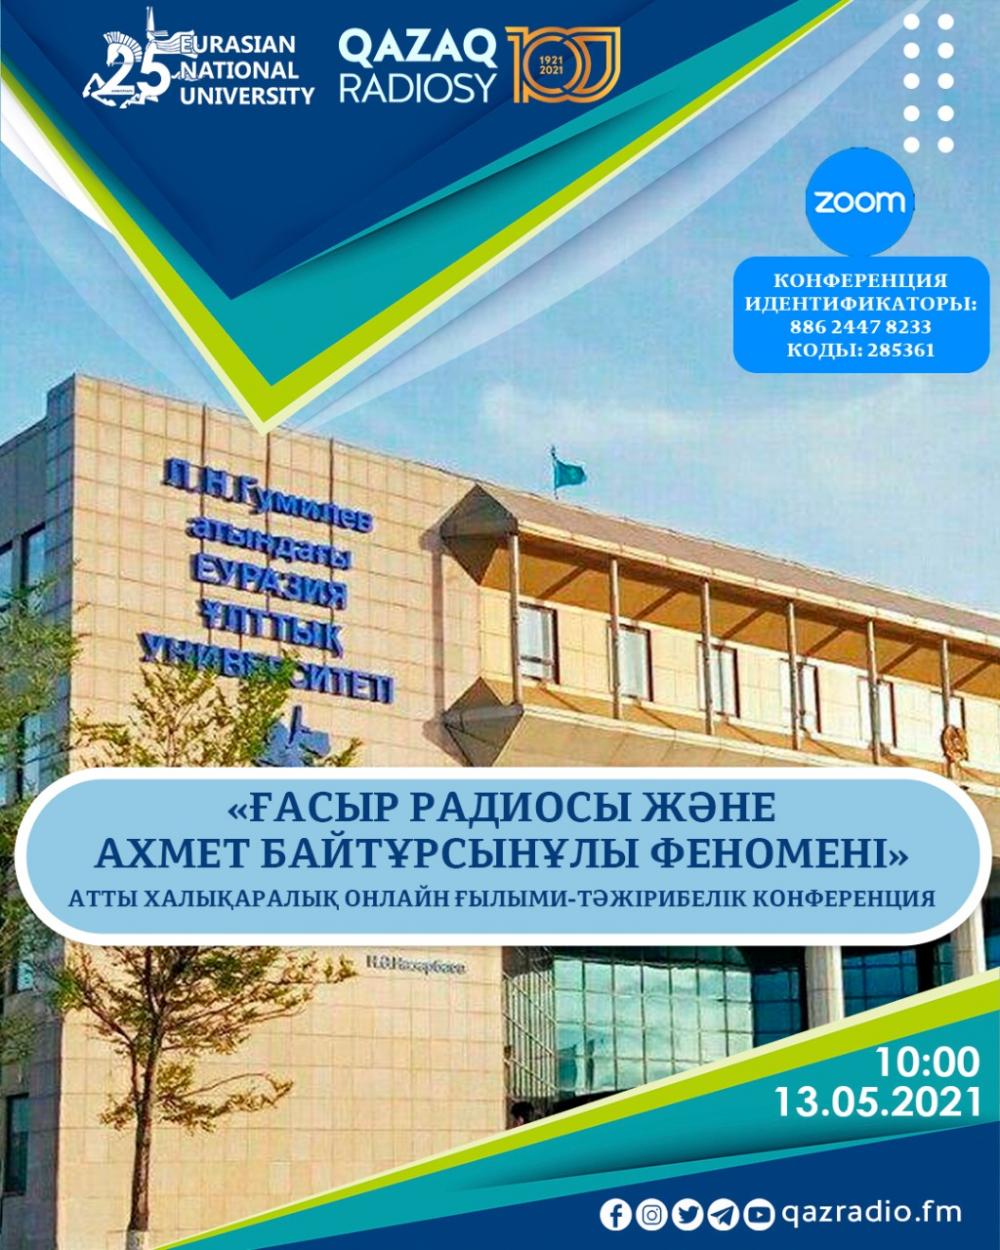 Международная научно-практическая онлайн-конференция «Вековое радио и феномен Ахмета Байтурсынова»